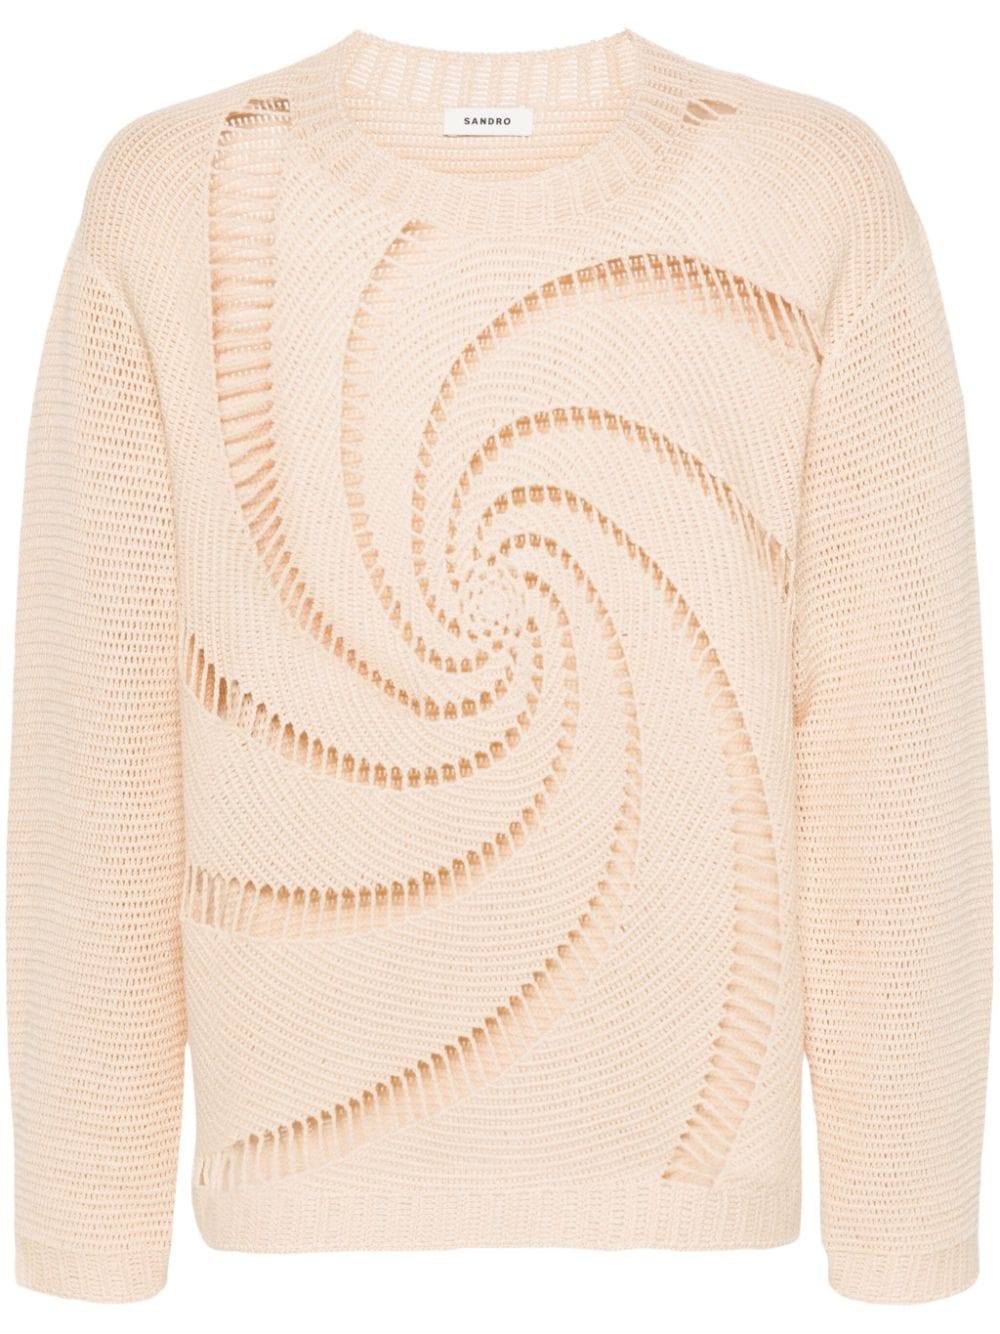 SANDRO swirl-pattern open-knit jumper - Neutrals von SANDRO